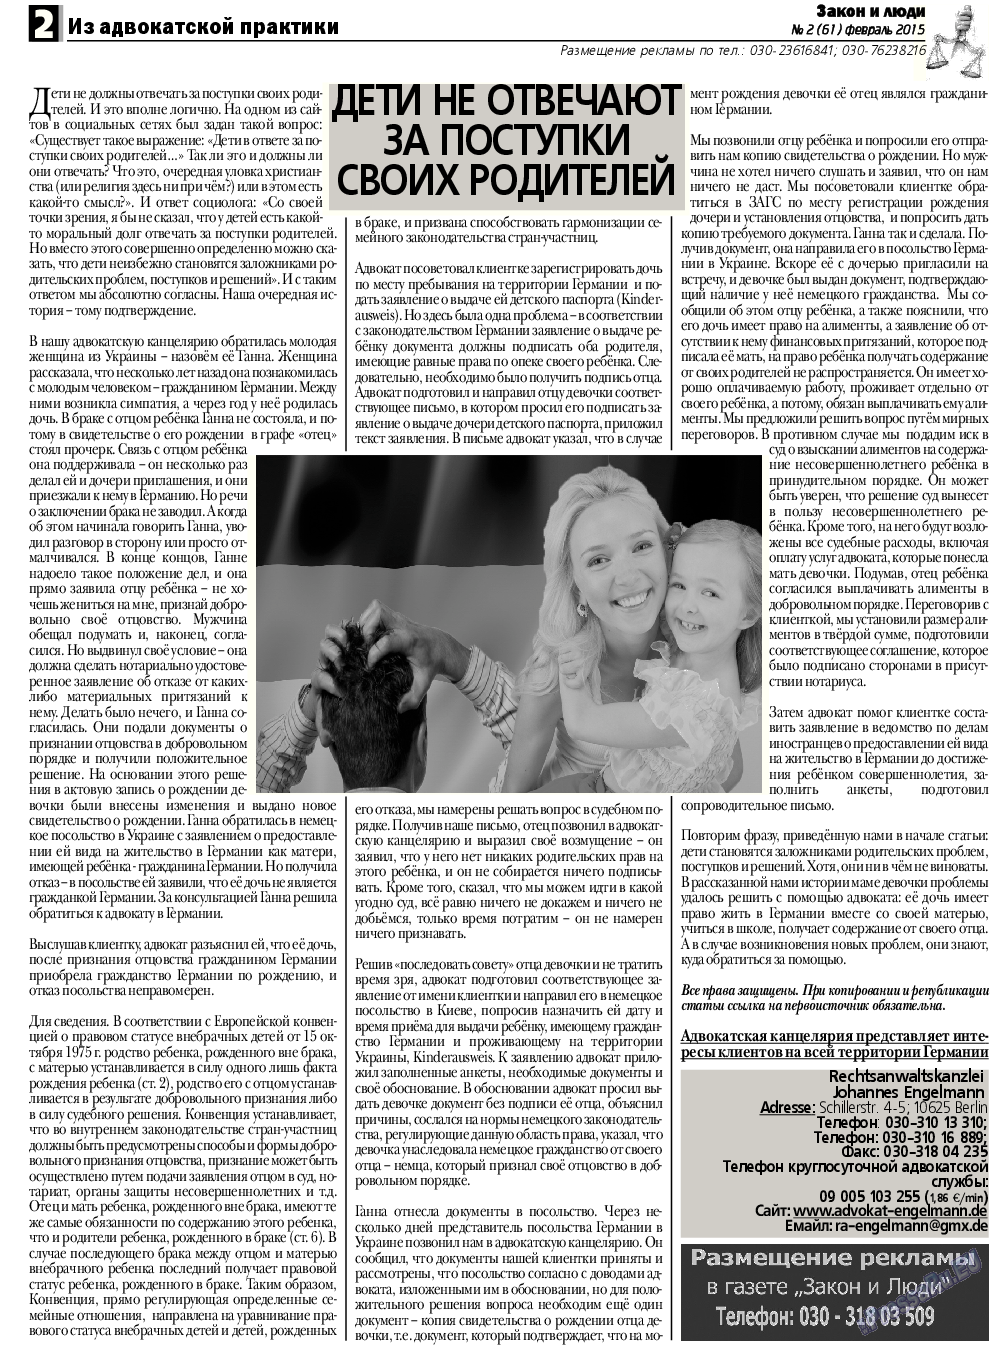 Закон и люди, газета. 2015 №2 стр.2